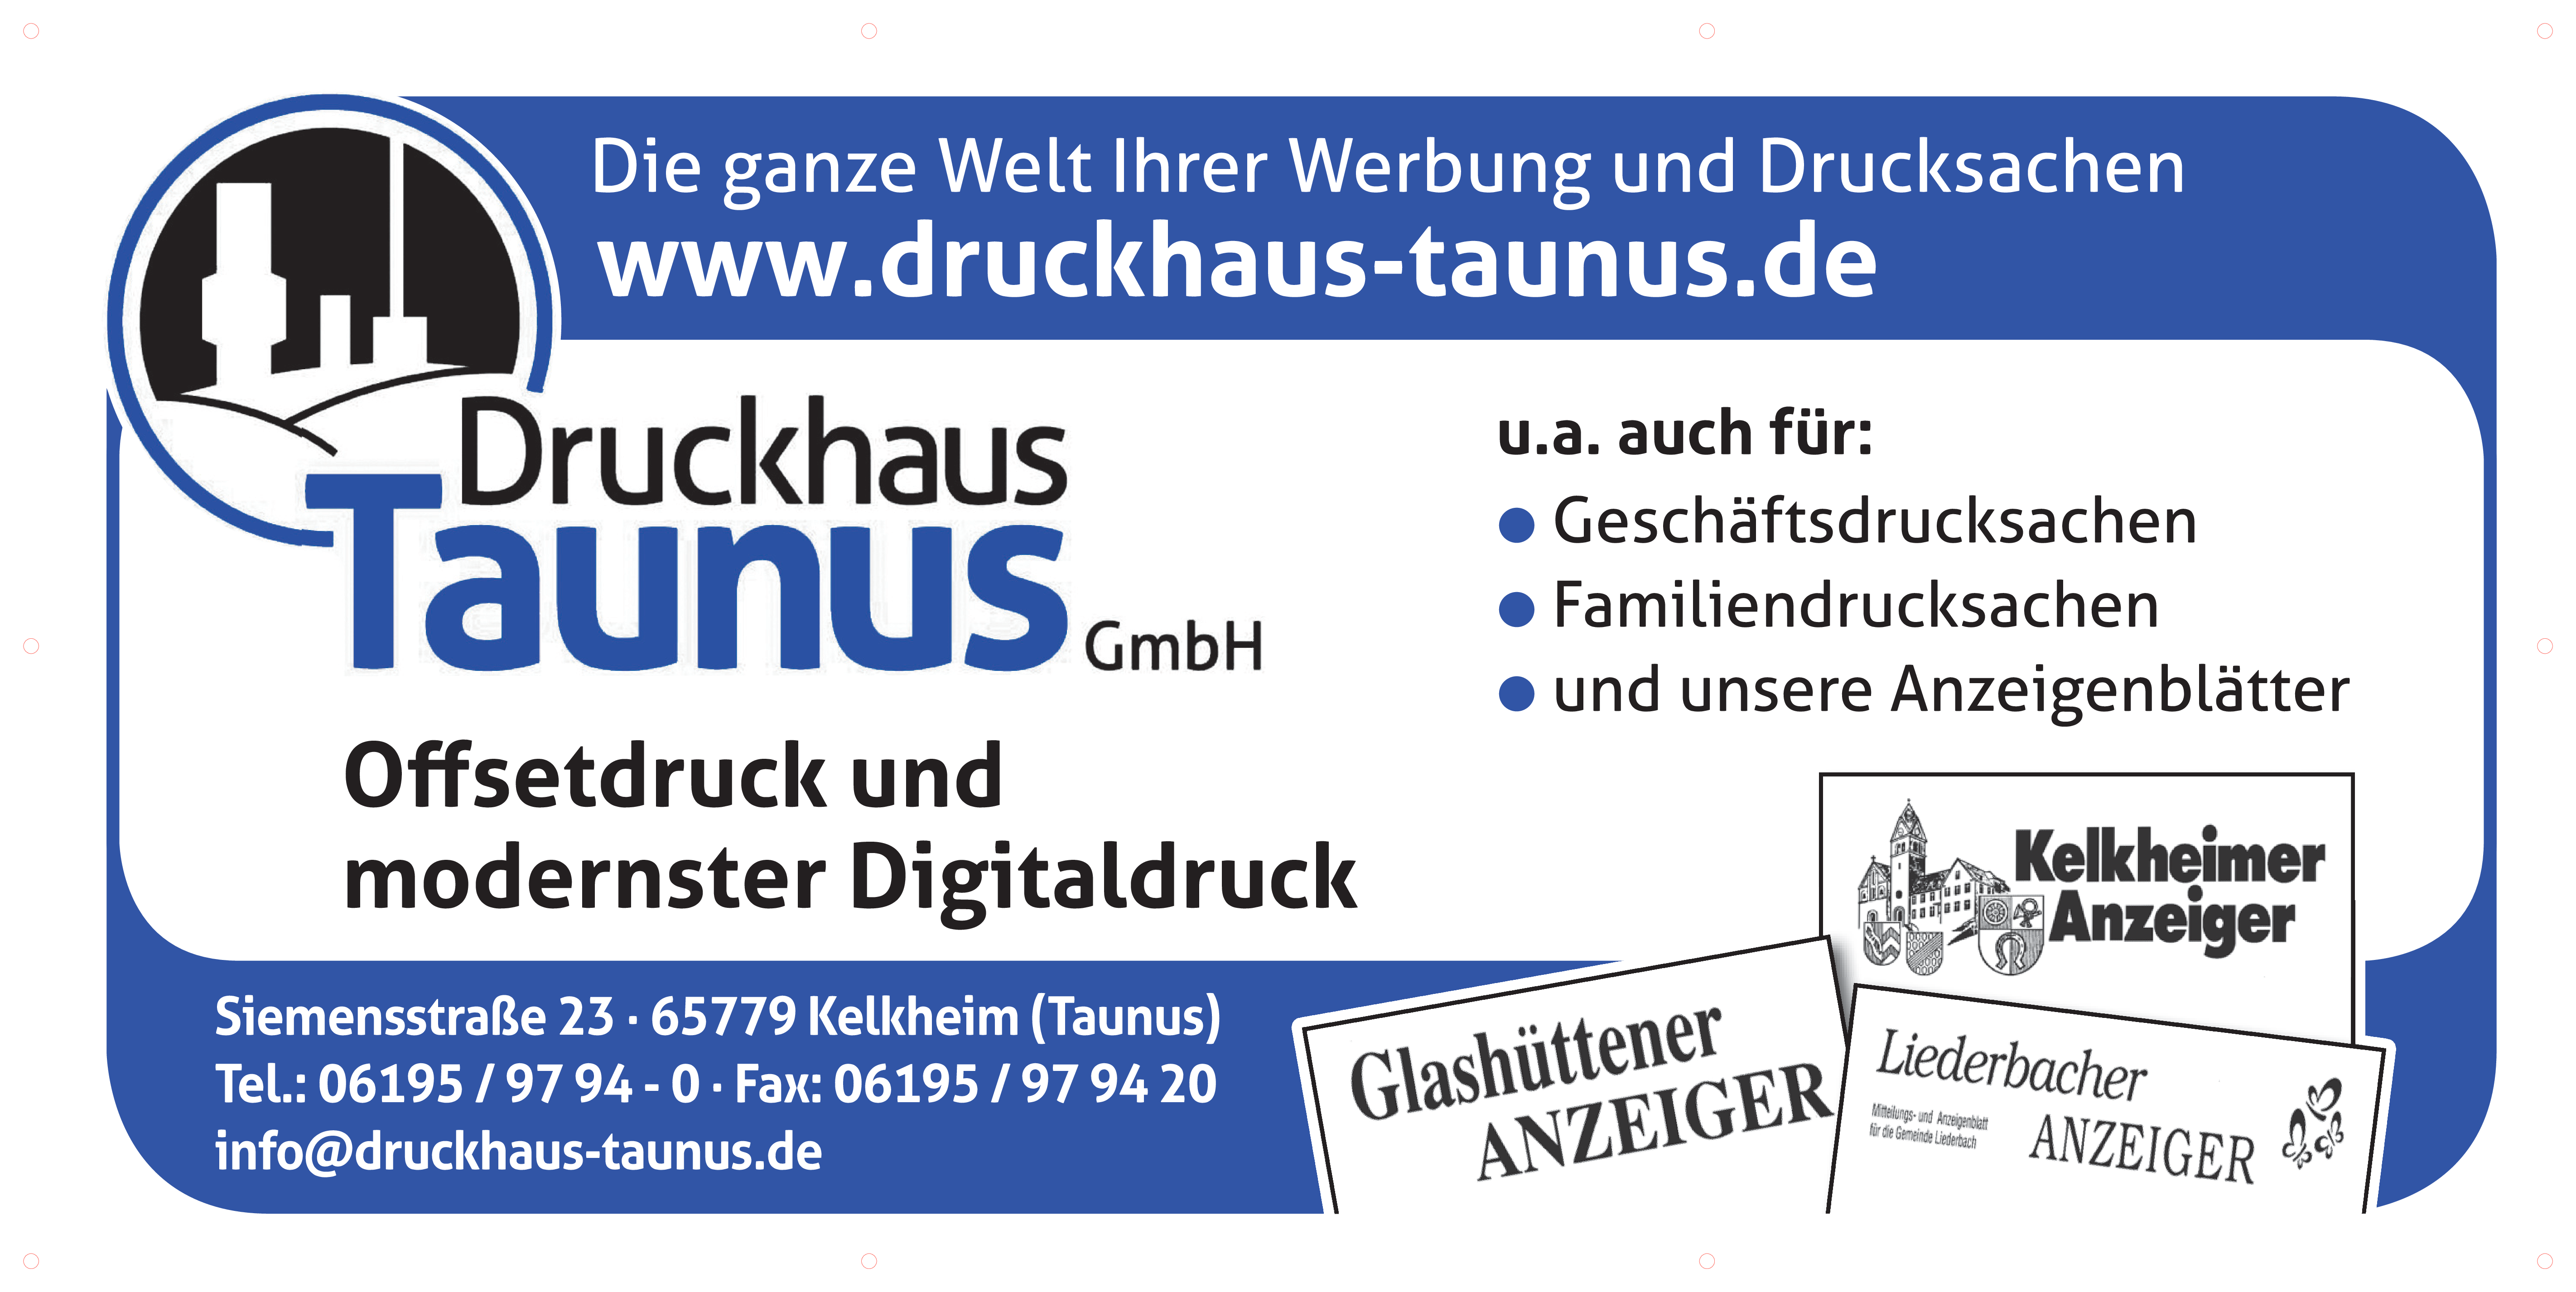 DJK Sponsor Druckhaus-T